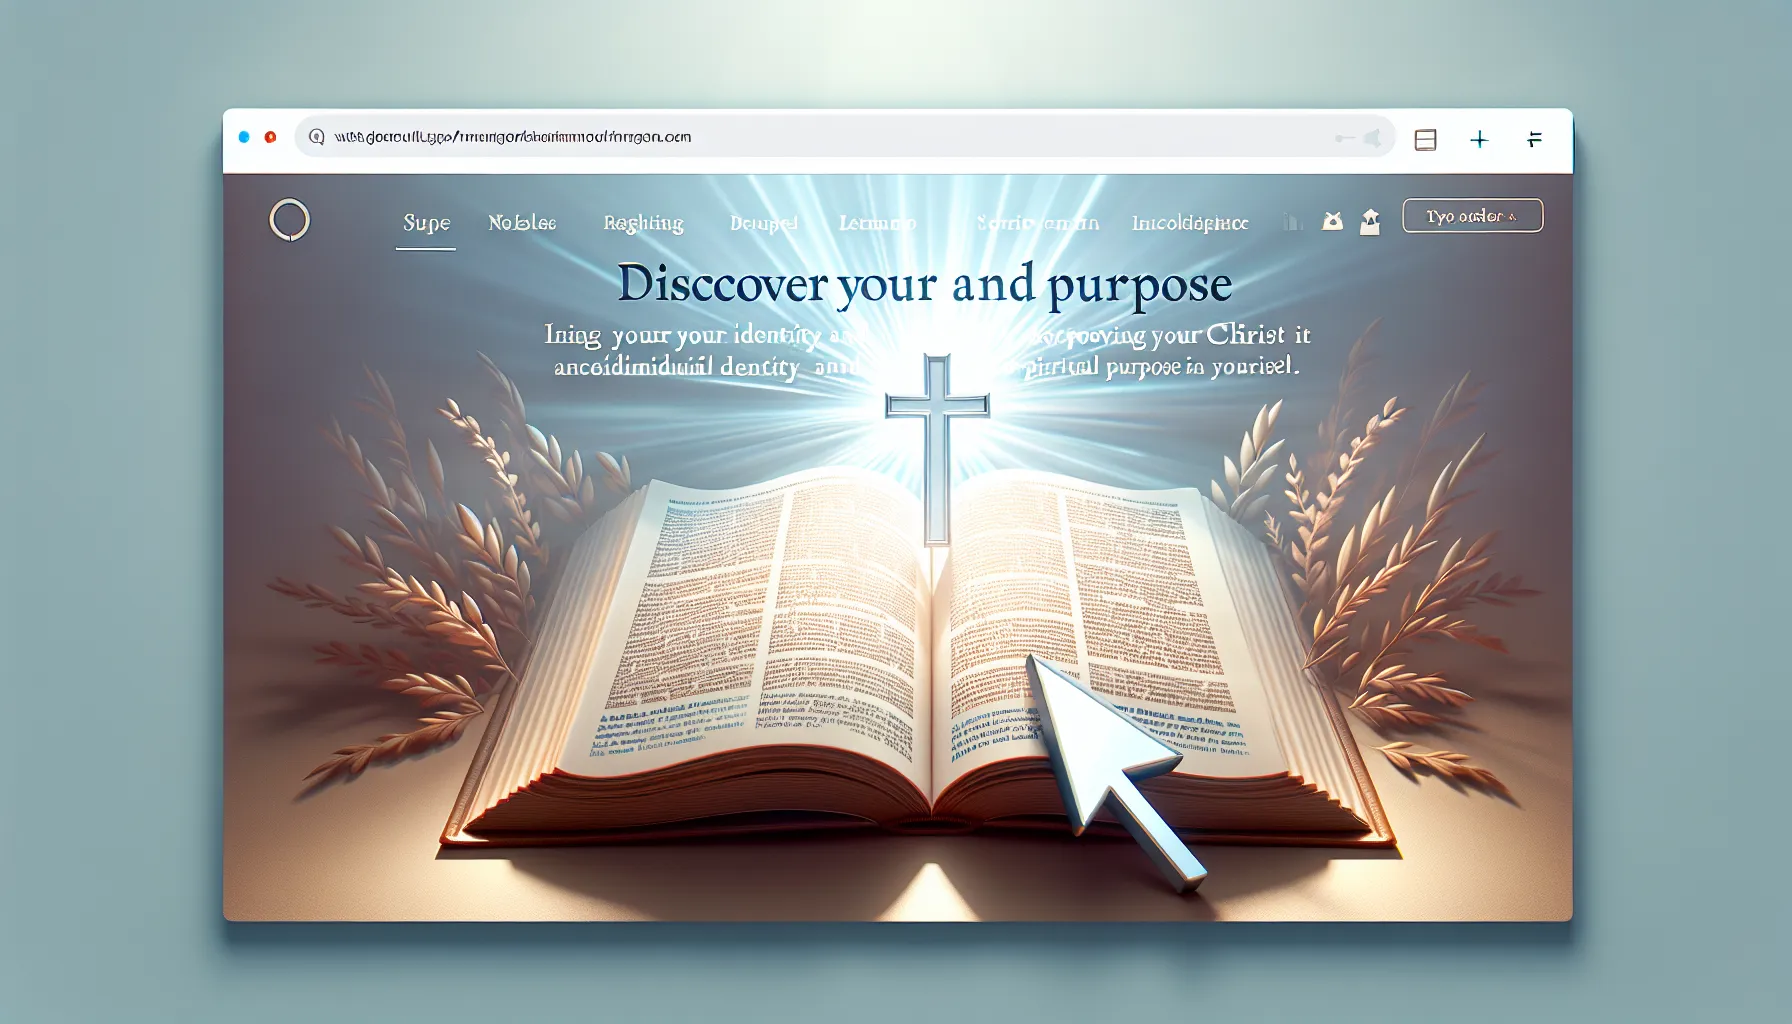 Descubre tu identidad y propósito en Cristo a través de este revelador artículo web.